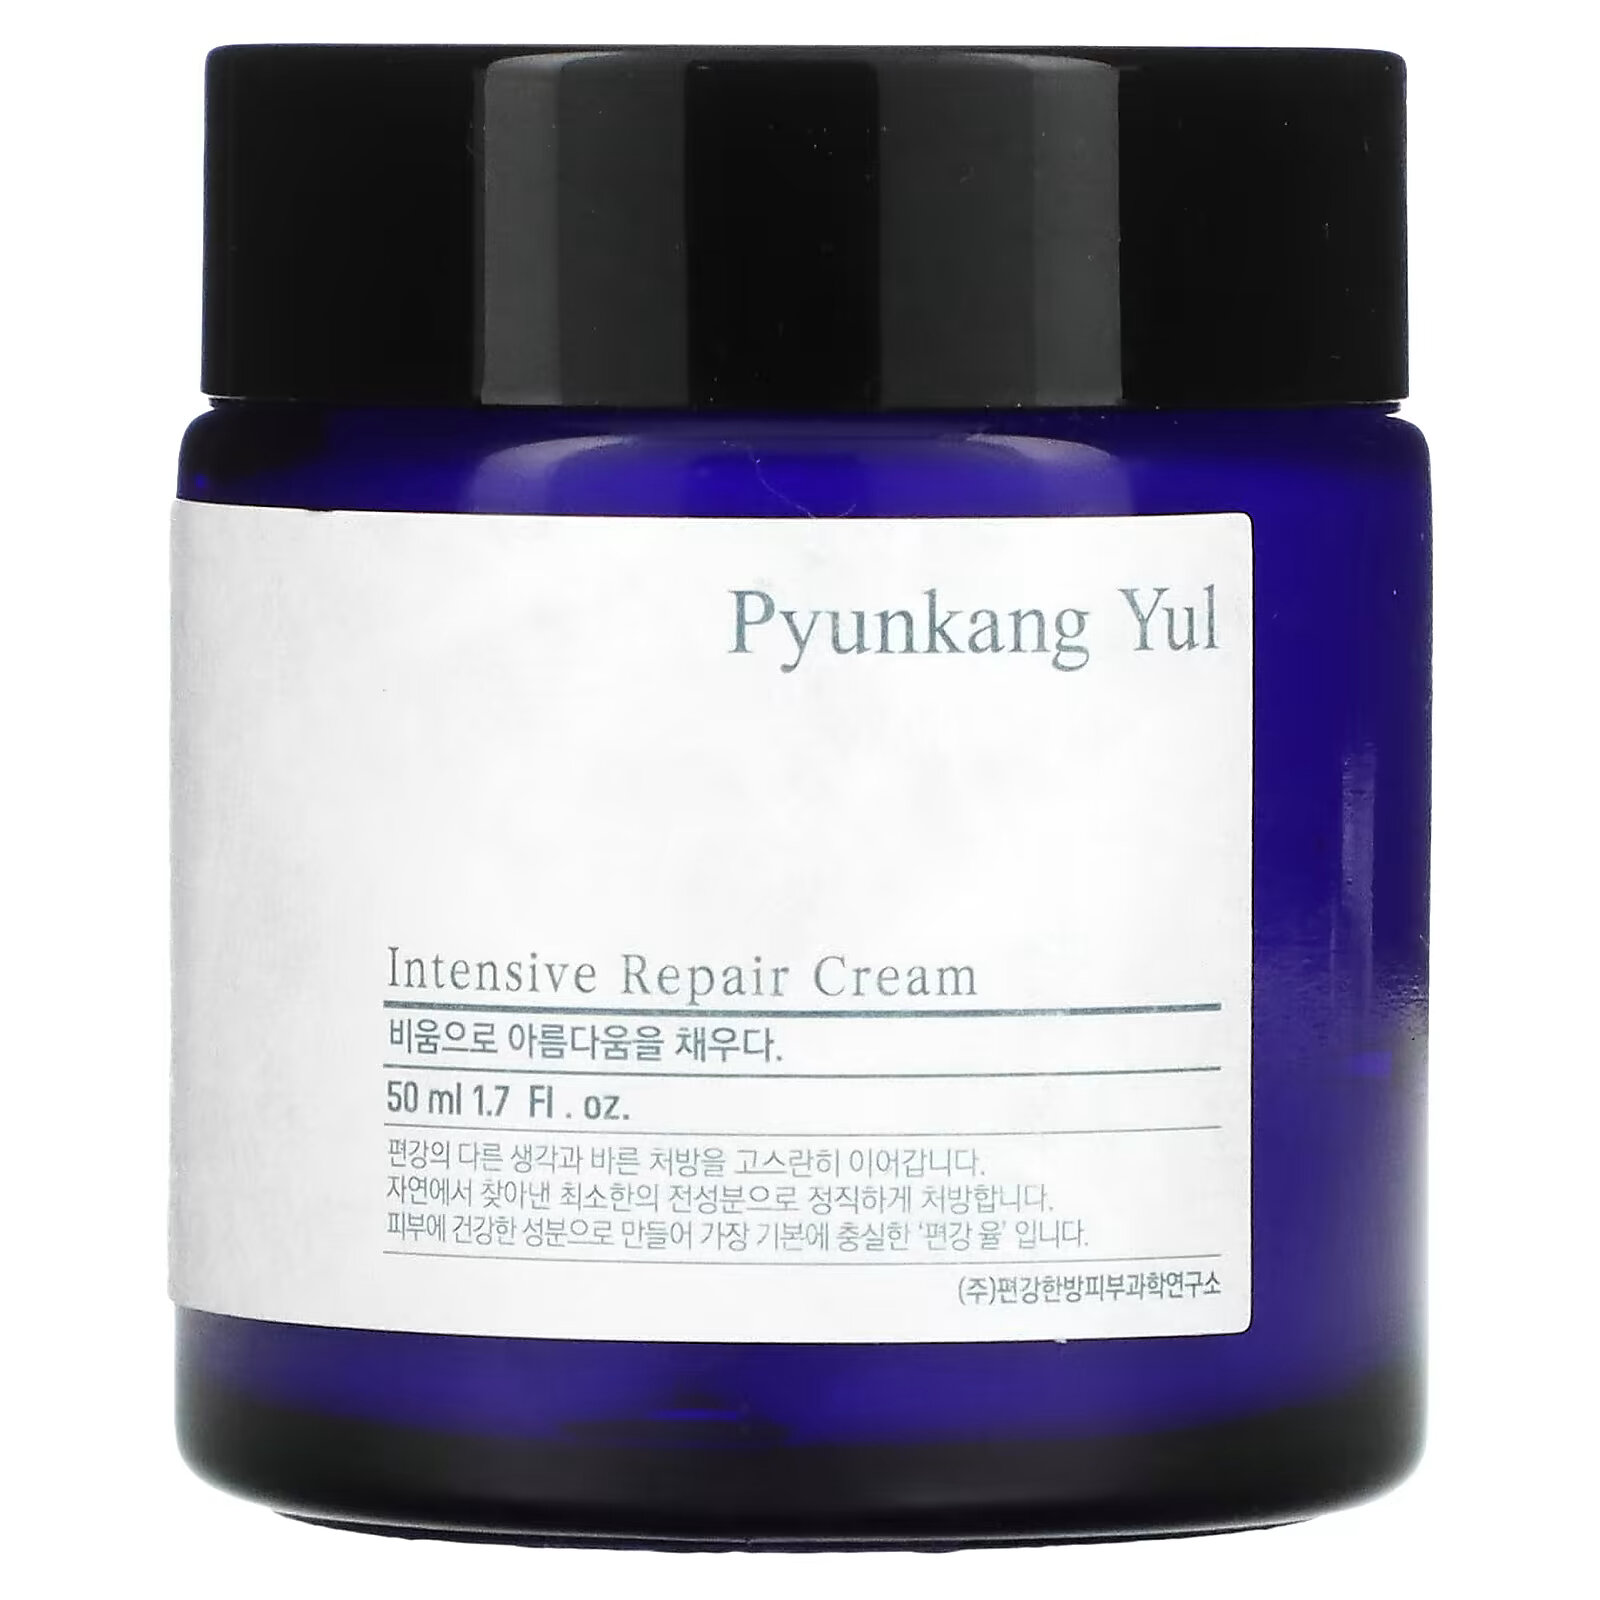 Pyunkang Yul, интенсивный восстанавливающий крем, 50 мл (1,7 жидк. унции) 30821